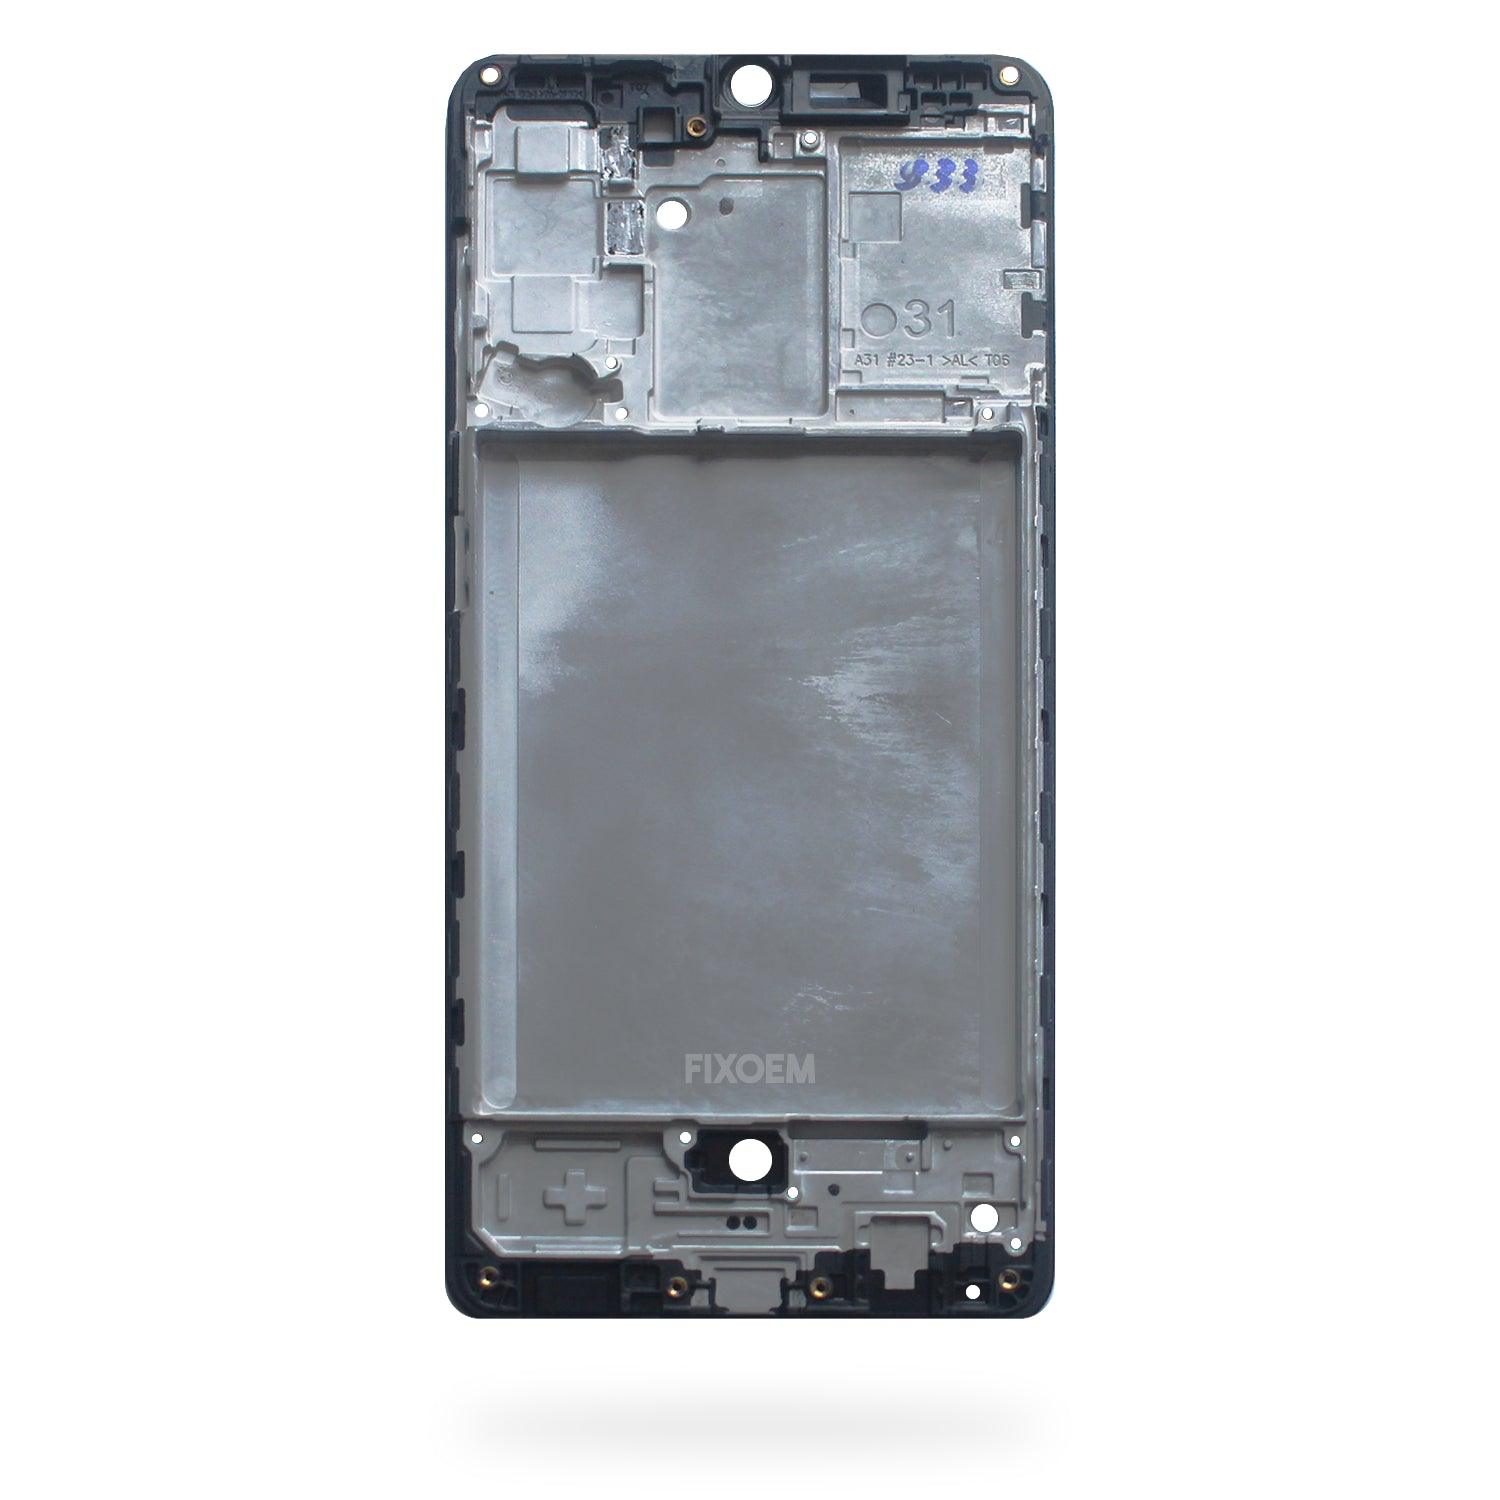 Bisel Samsung A31 4G A315 a solo $ 110.00 Refaccion y puestos celulares, refurbish y microelectronica.- FixOEM